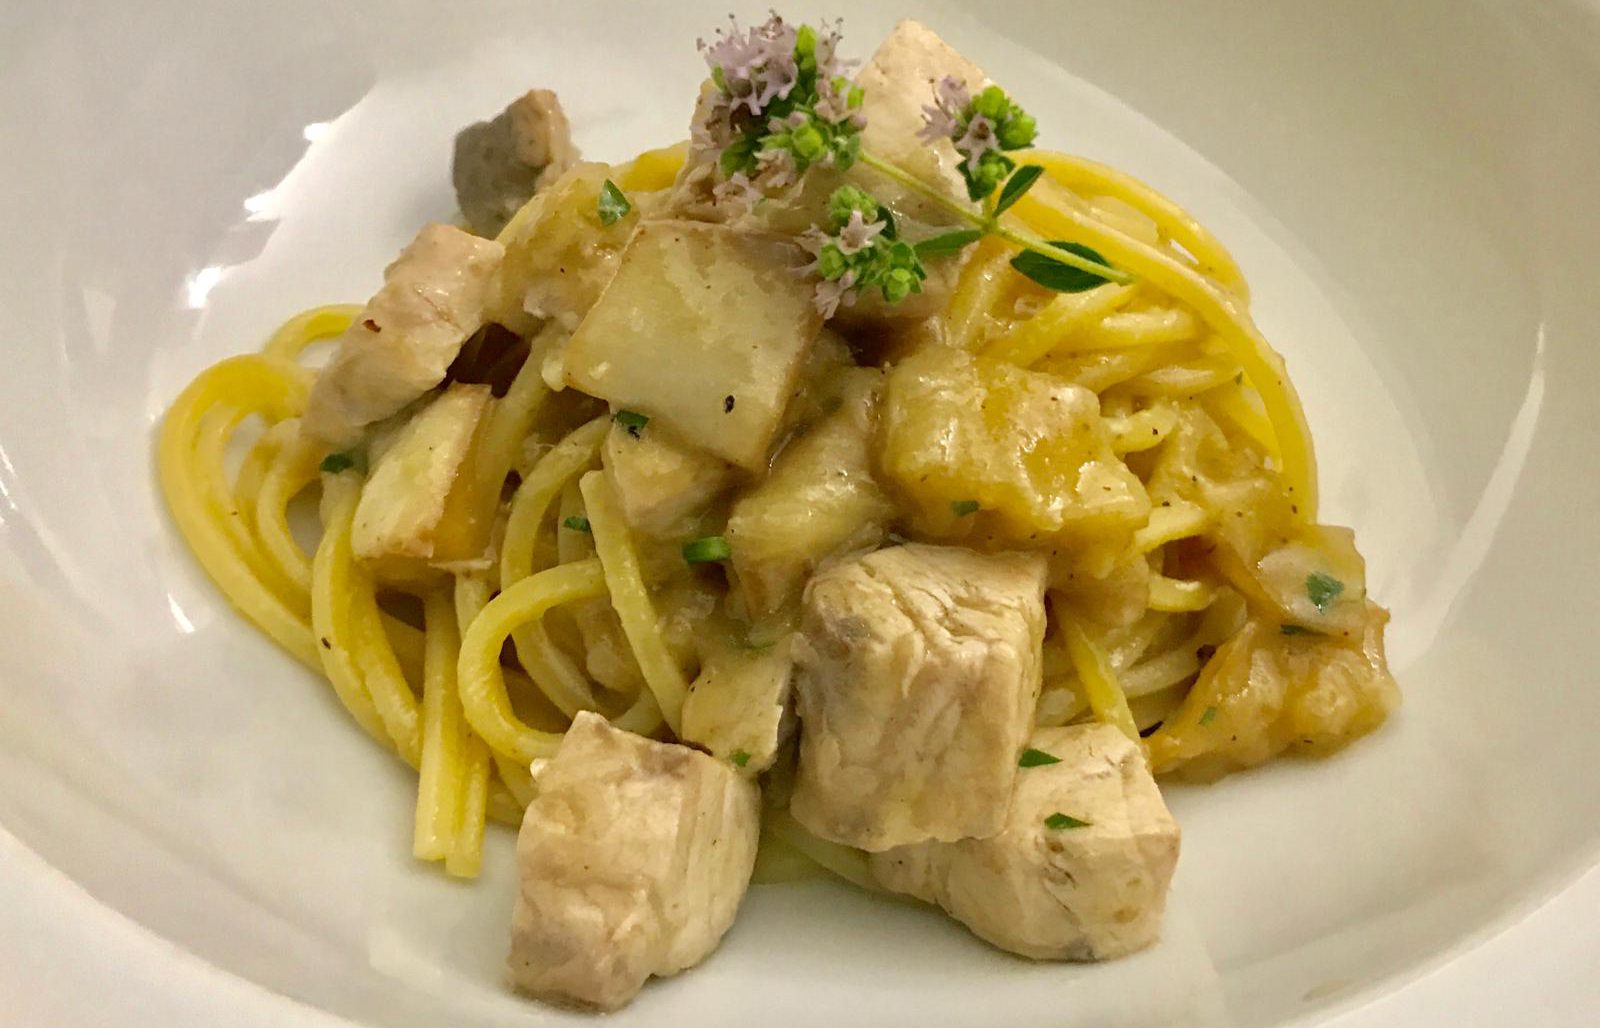  Le ricette di Joseph | Spaghetti con pesce spada, melanzana e zafferano